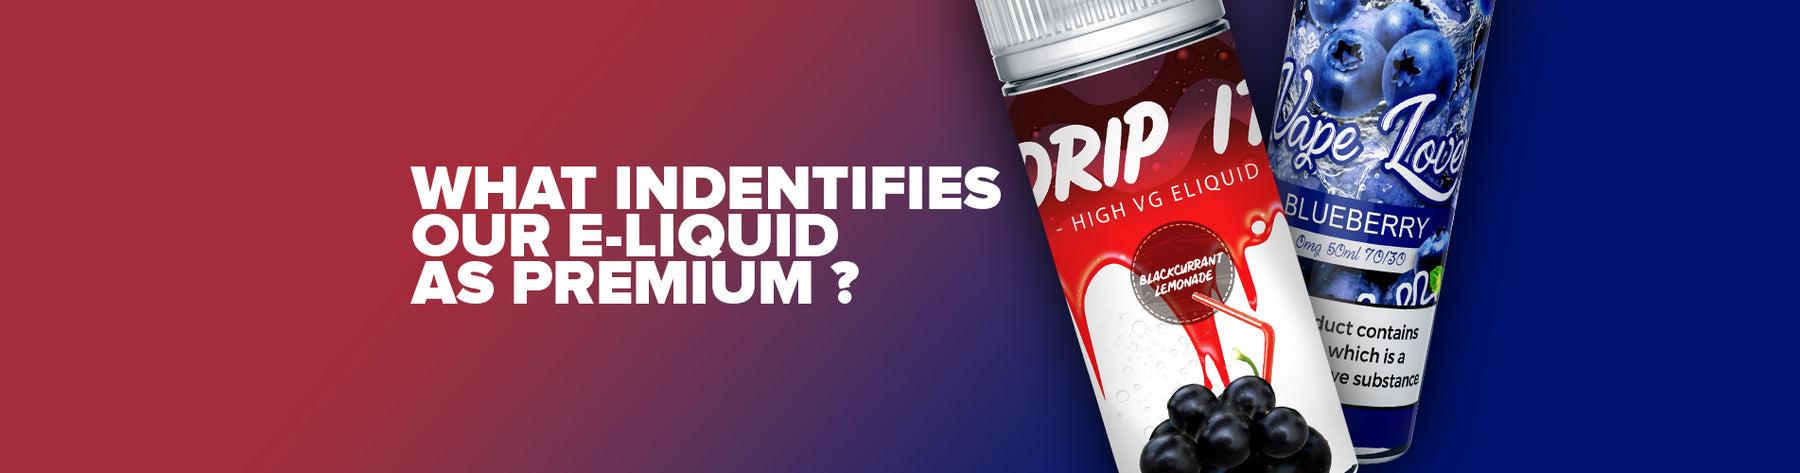 What Identifies Our E-Liquid as Premium